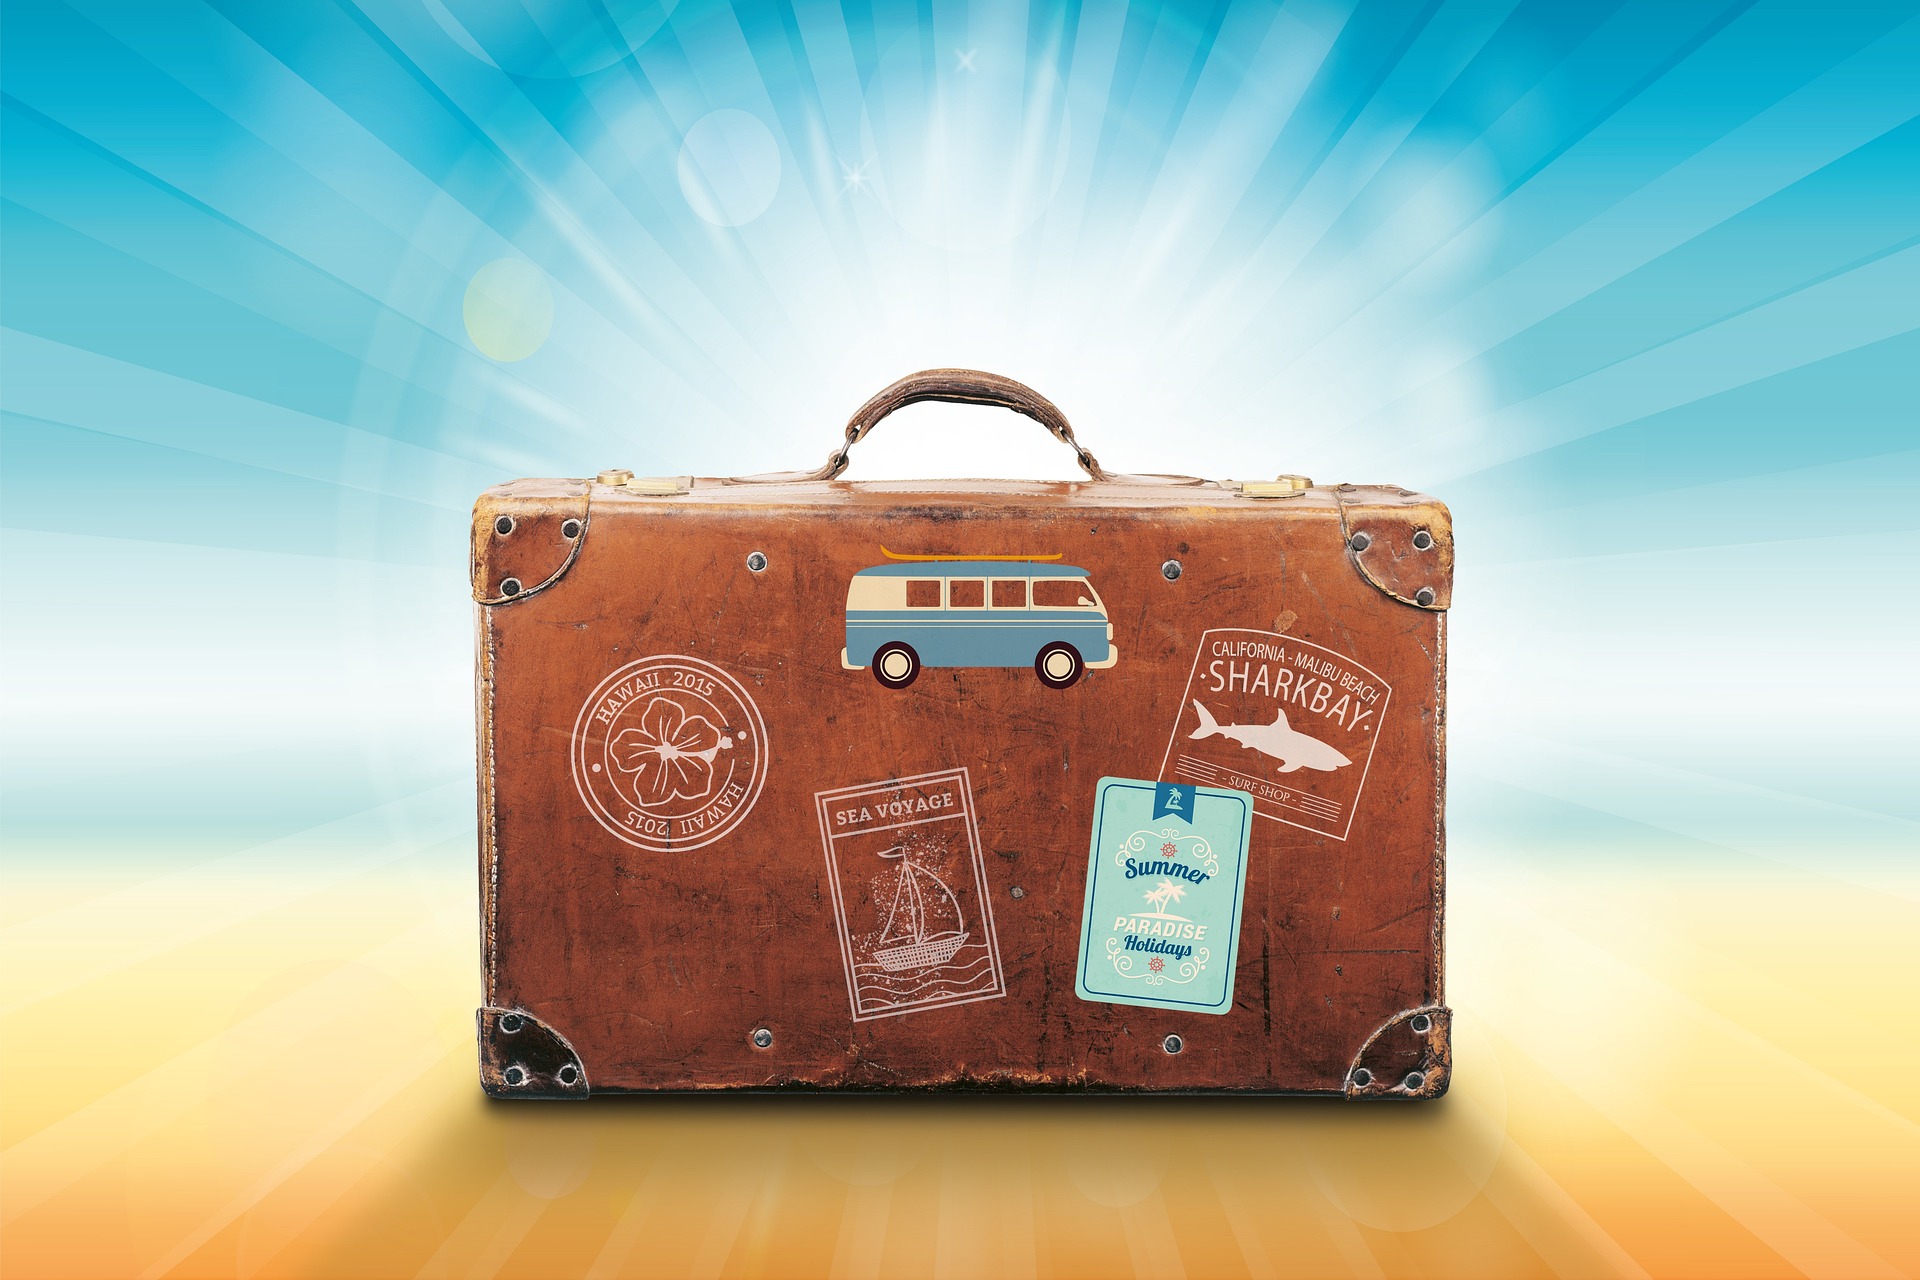 Stiliisierter Koffer als Symbol für Urlaubsfeeling